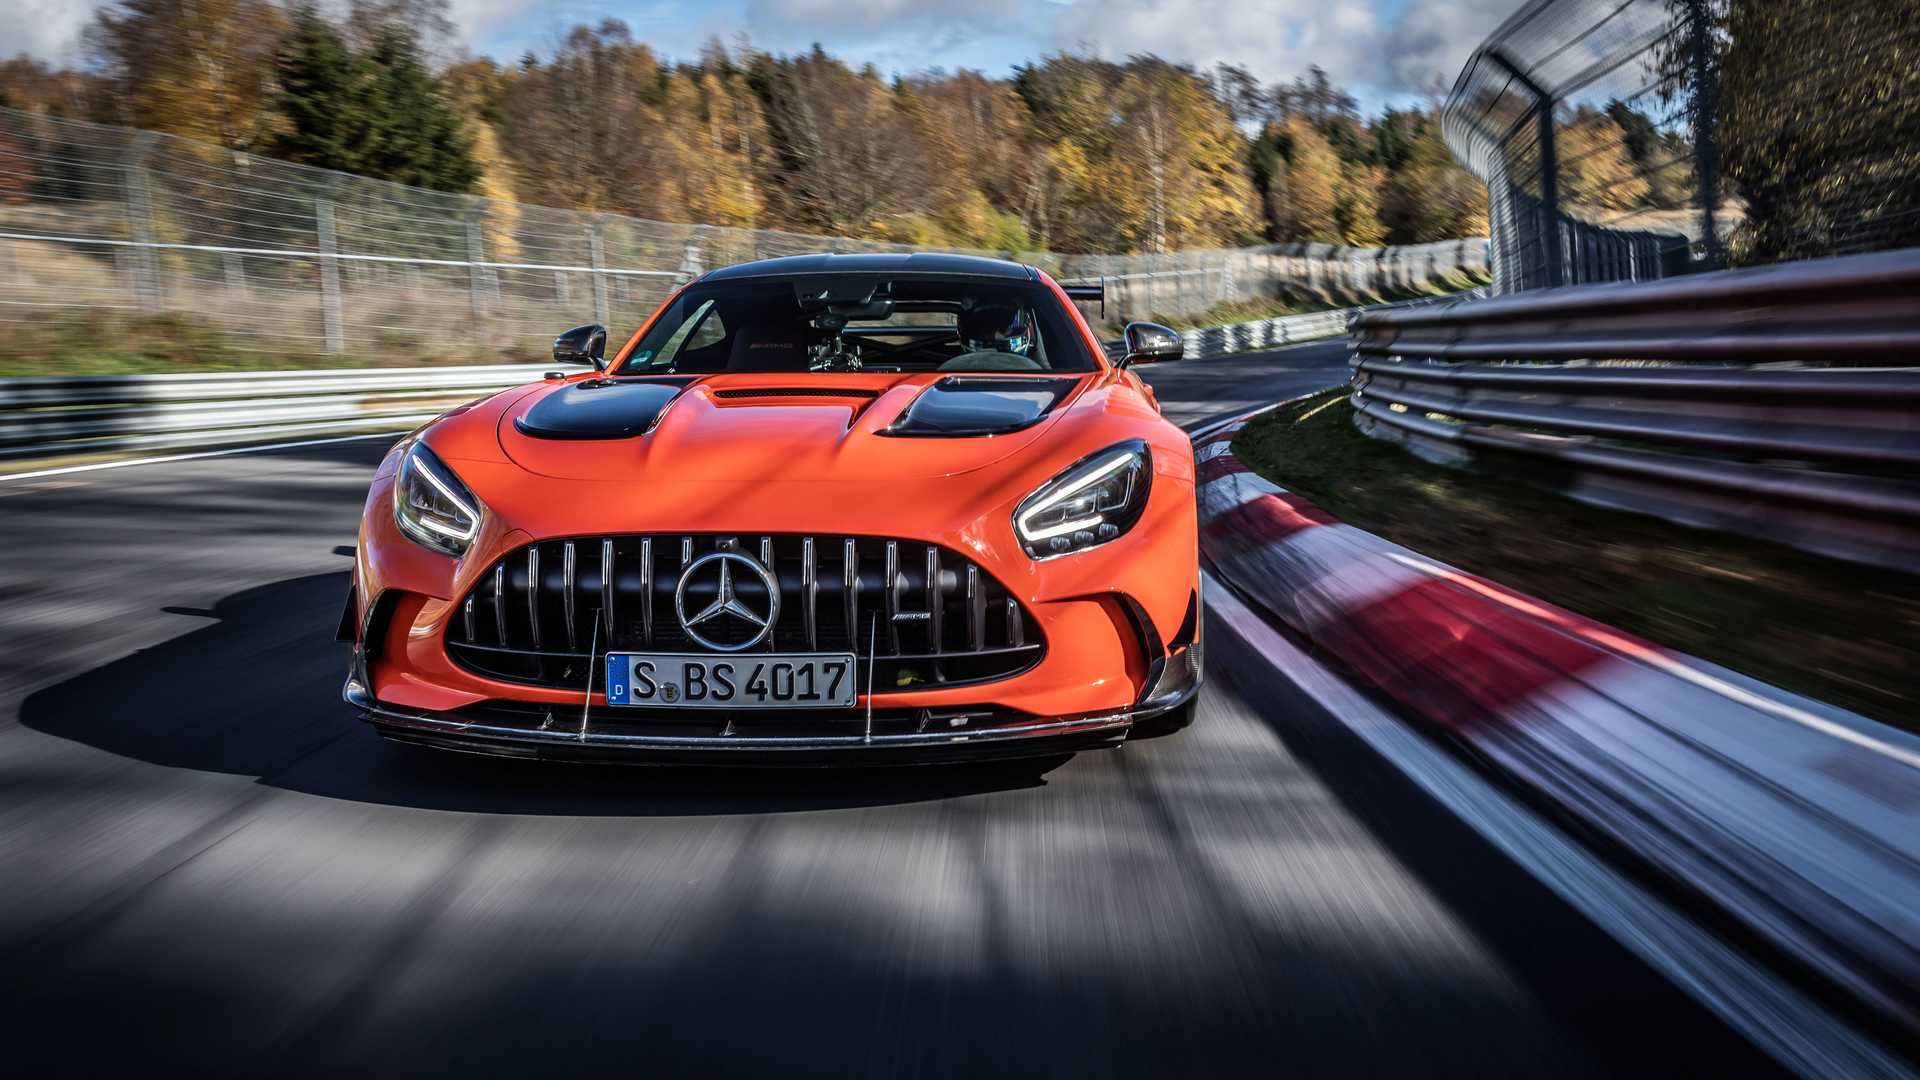 مرجع متخصصين ايران نماي جلو خودرو كوپه مرسدس آ ام گ جي تي سري سياه / Mercedes-AMG GT Black Series نارنجي رنگ در پيست